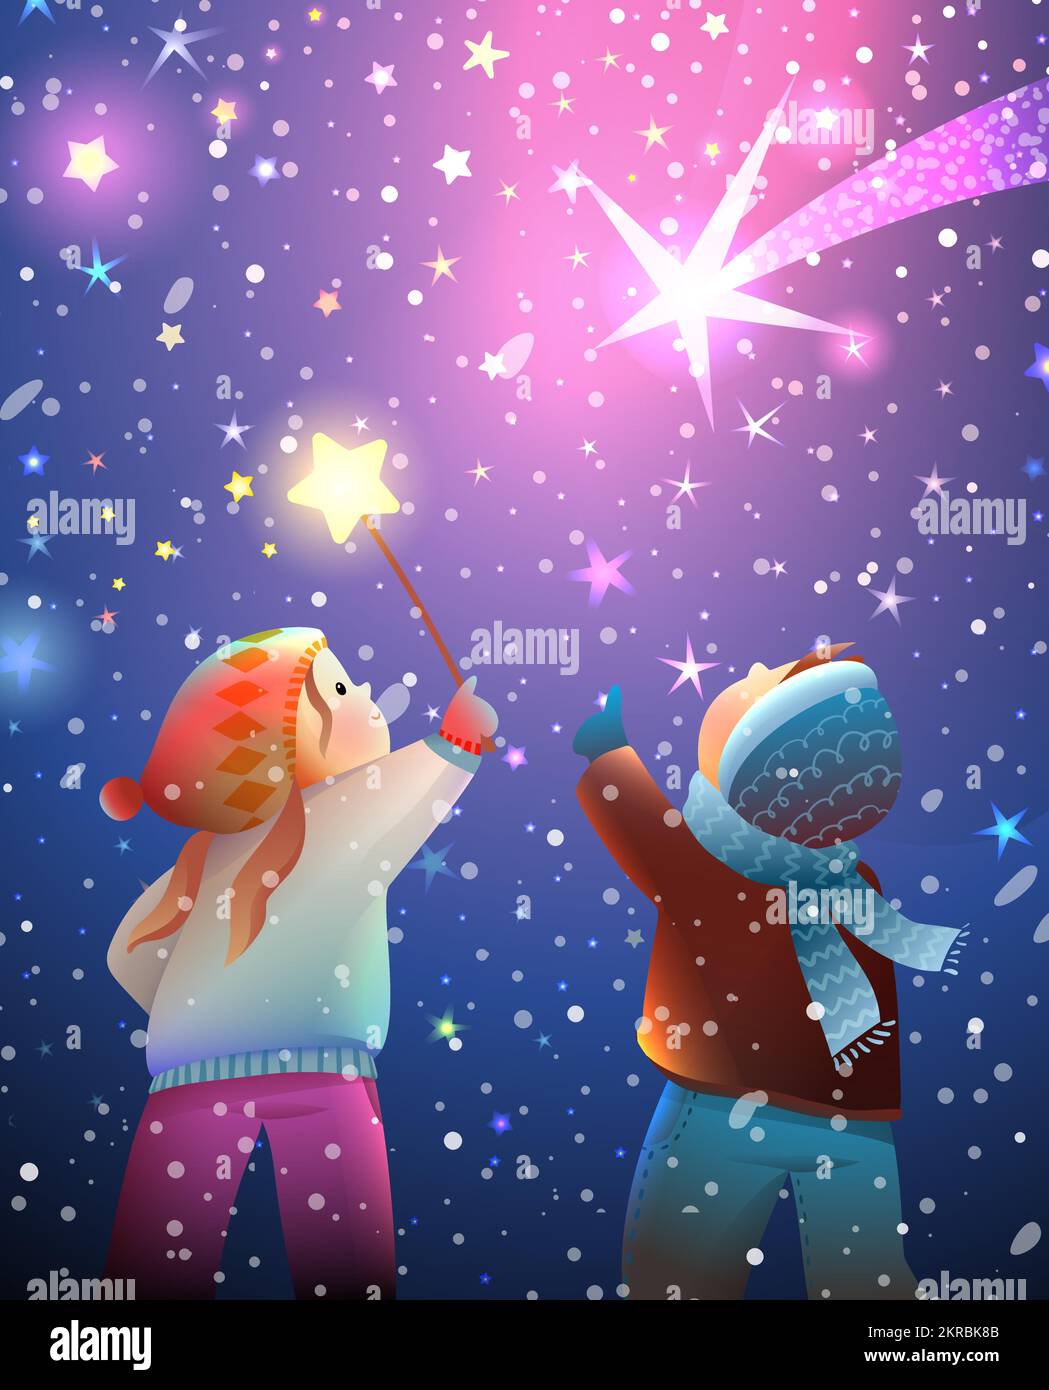 Children Watching Stars in Magic Winter Night Sky Stock Vector